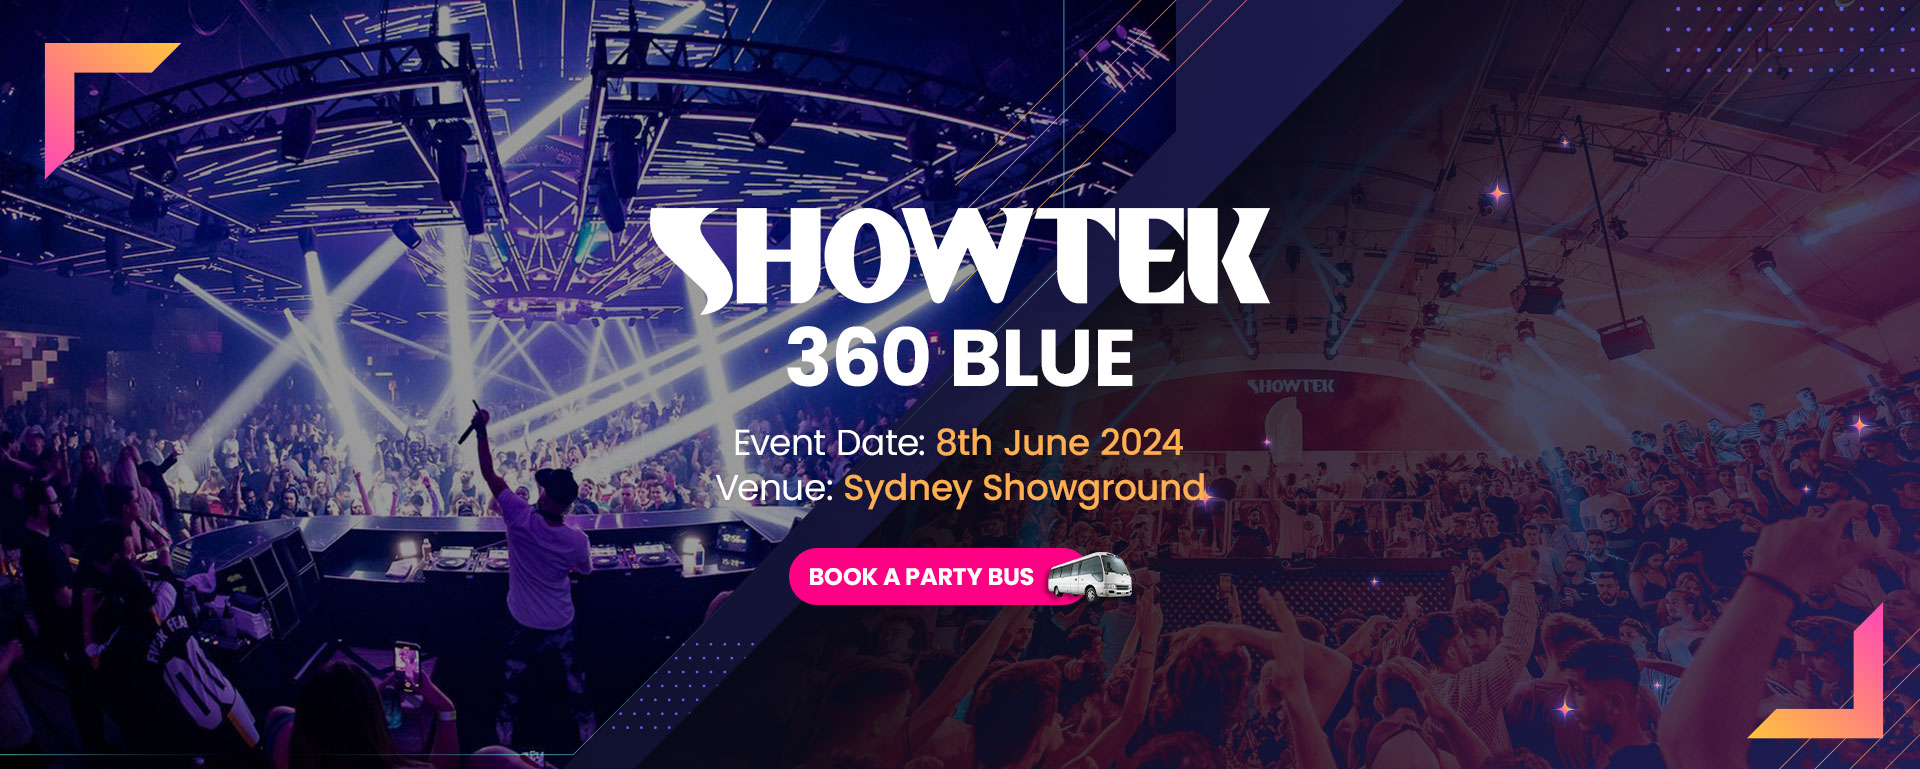 Showtek 360 Blue Event